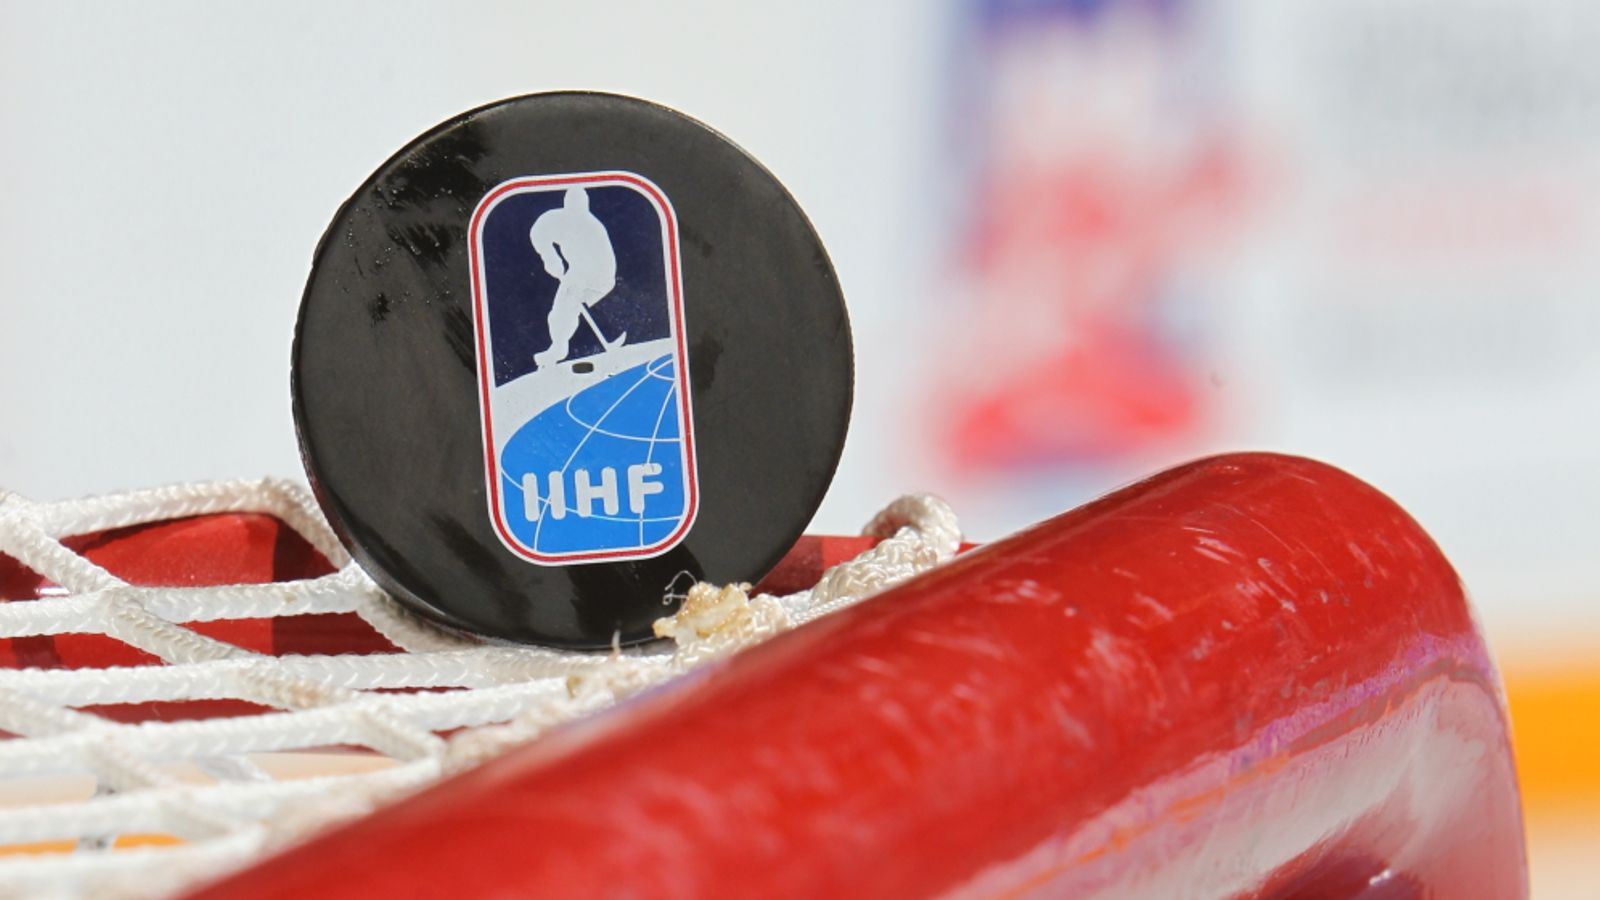 IIHF - Tournaments